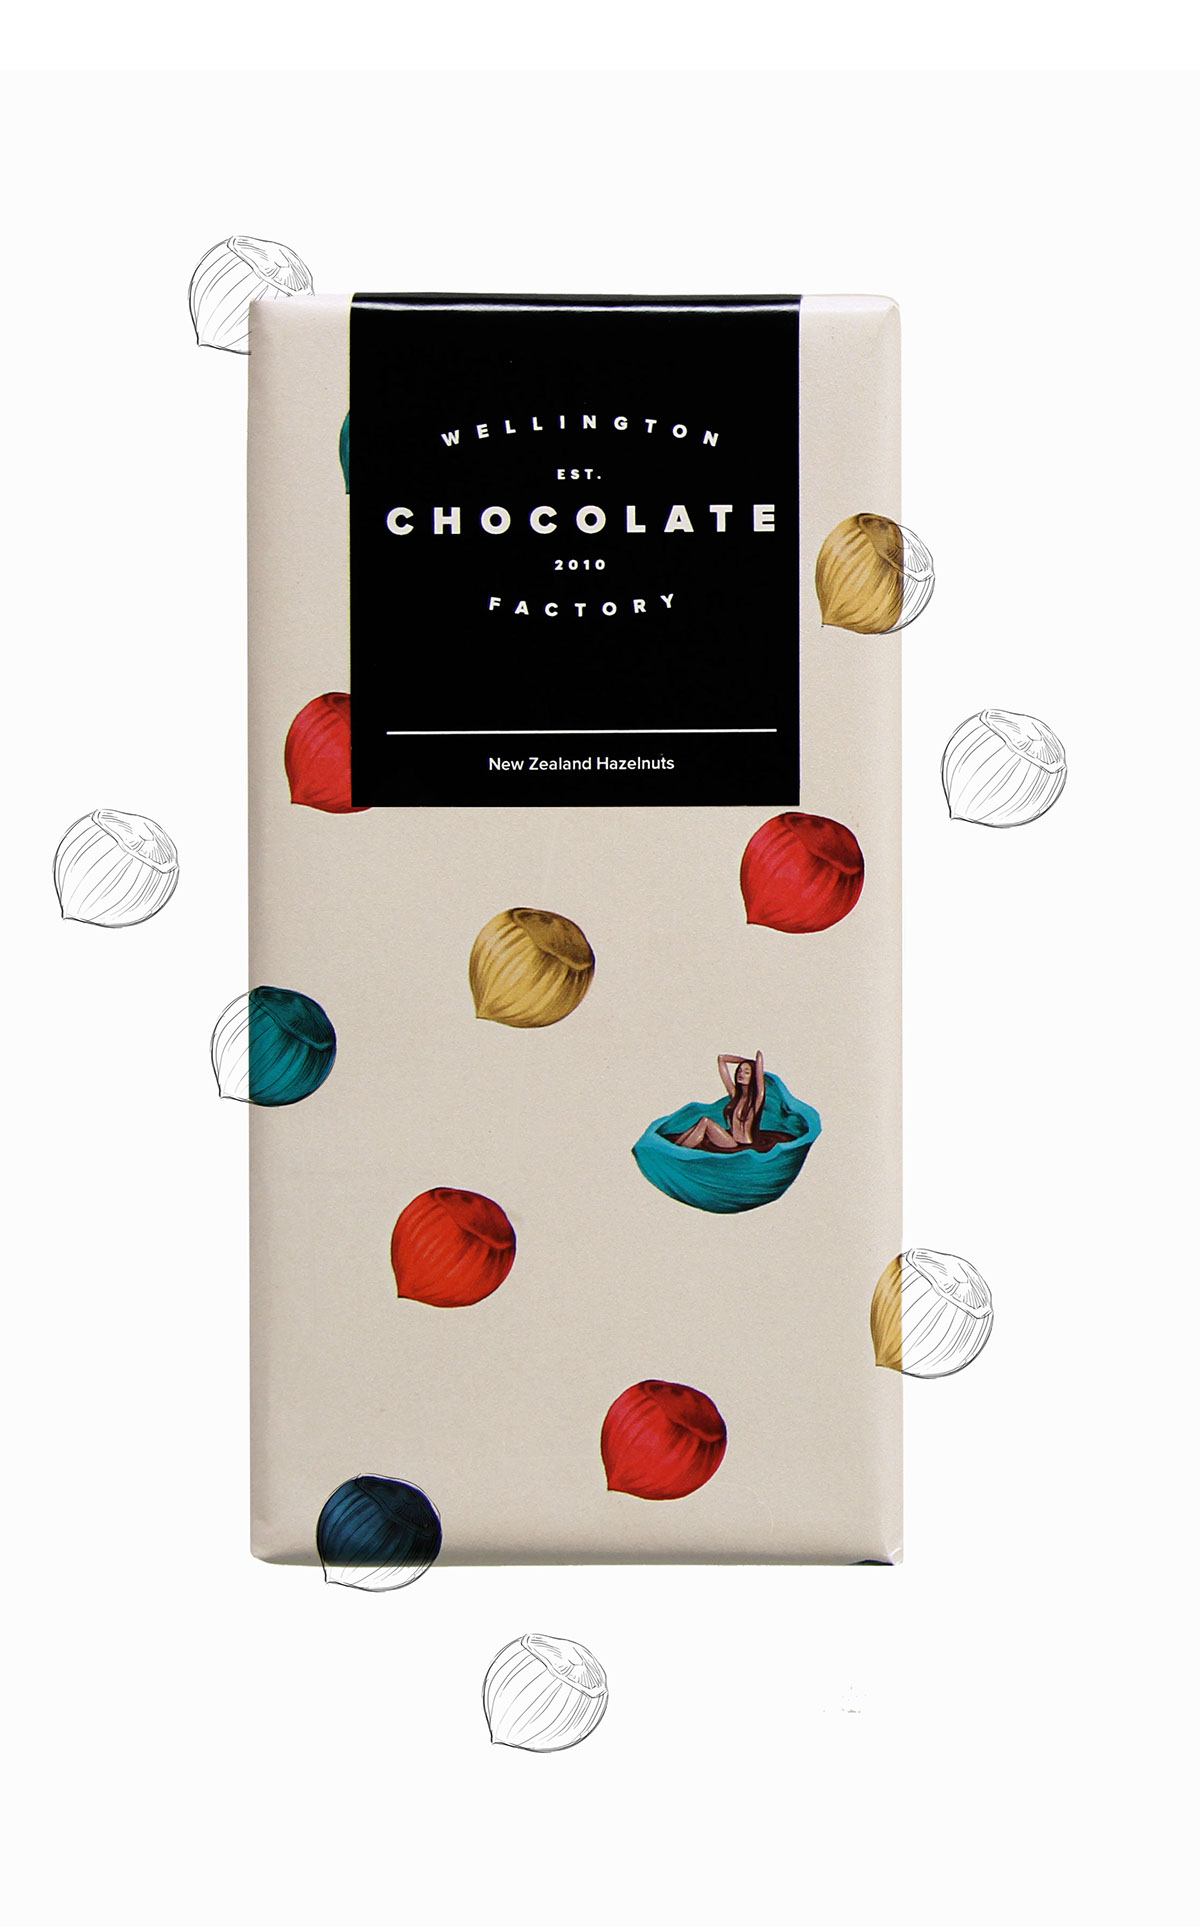 惠灵顿巧克力的巧克力包装设计。(图4)